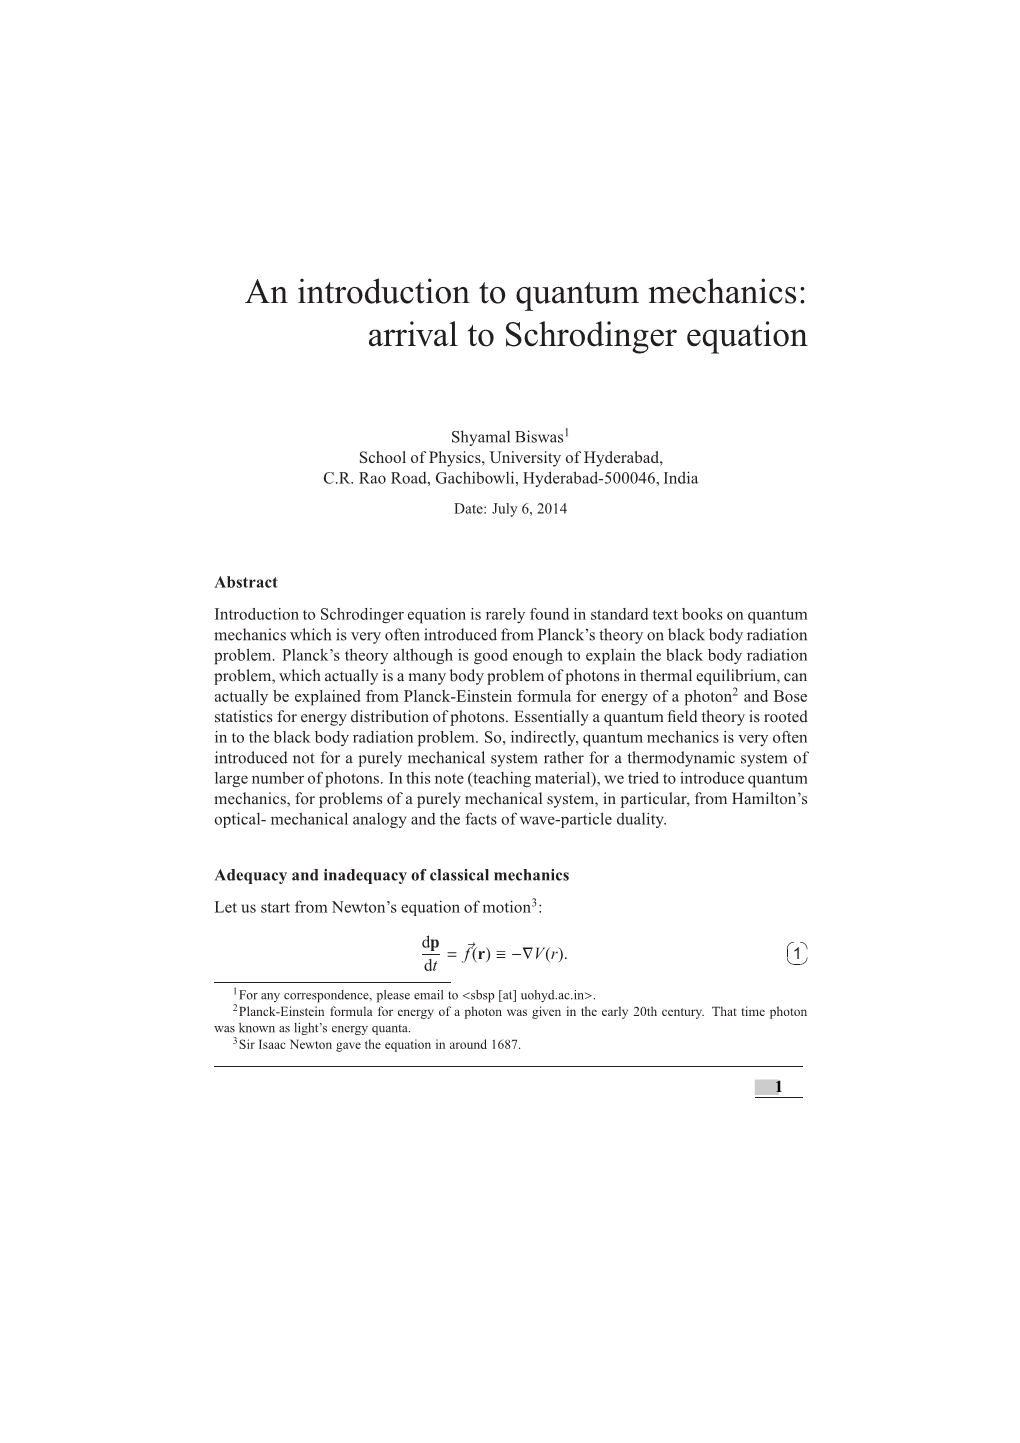 Quantum Mechanics: Arrival to Schrodinger Equation